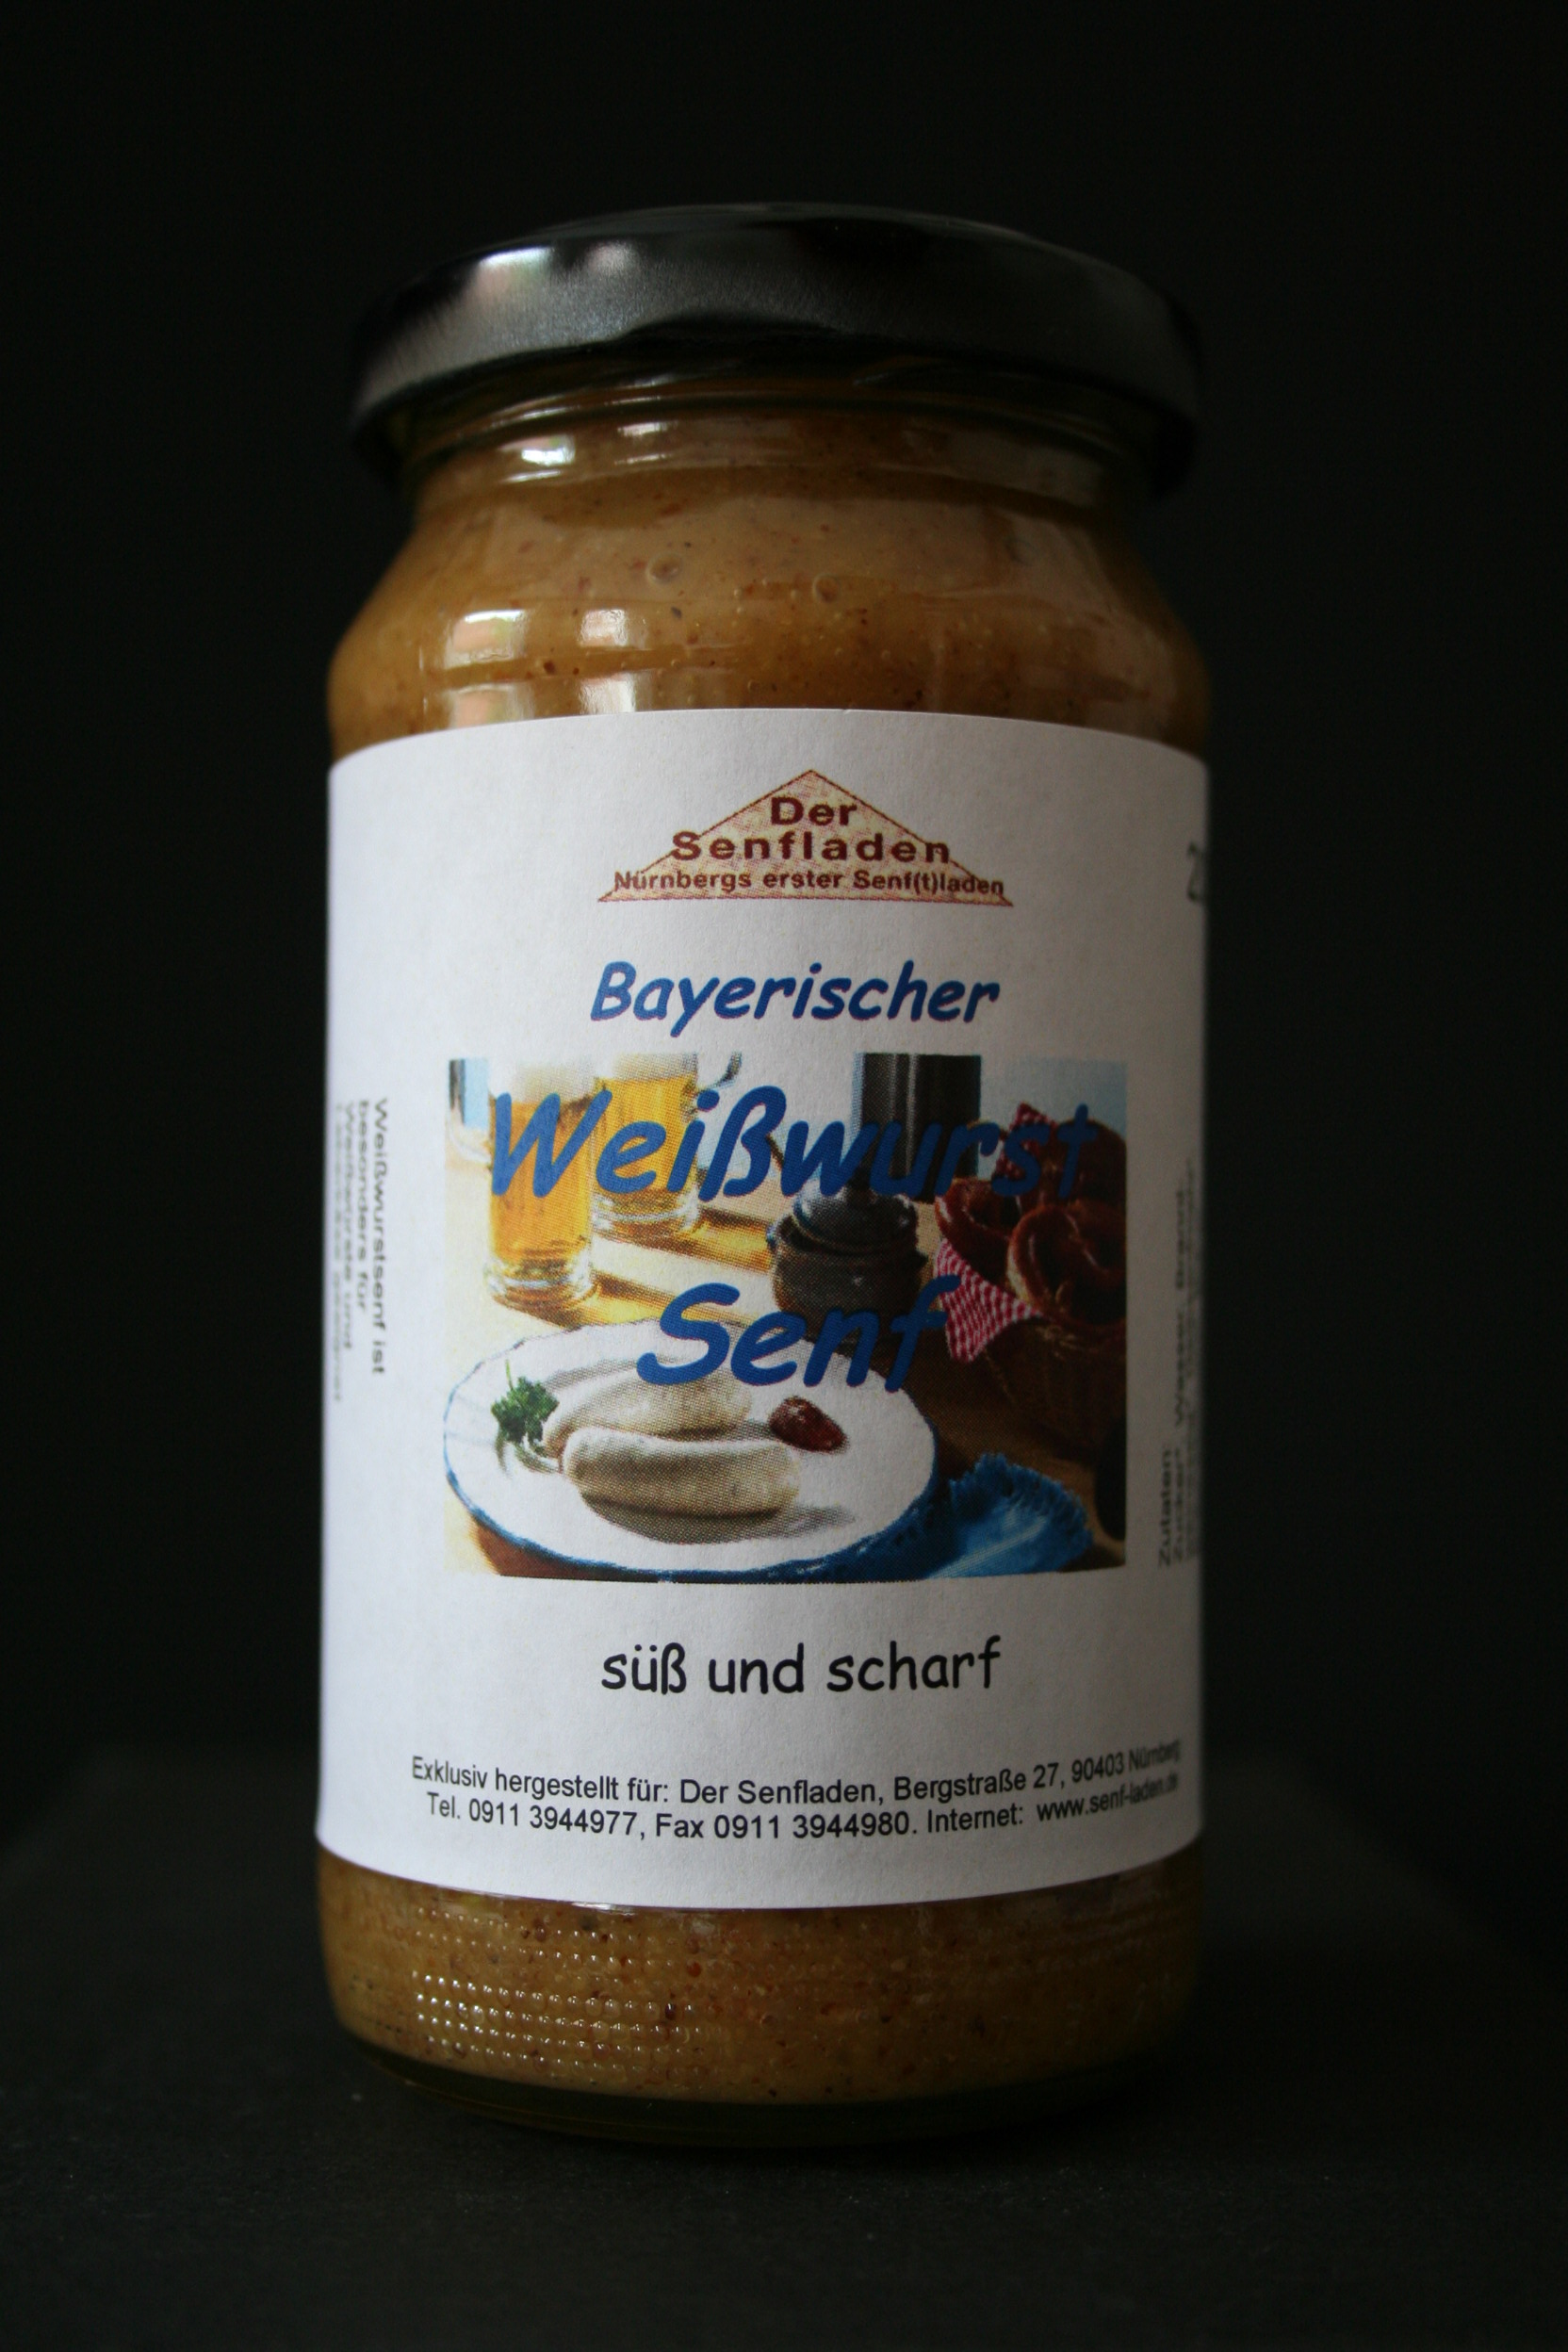 Bayerischer Weißwurst Senf